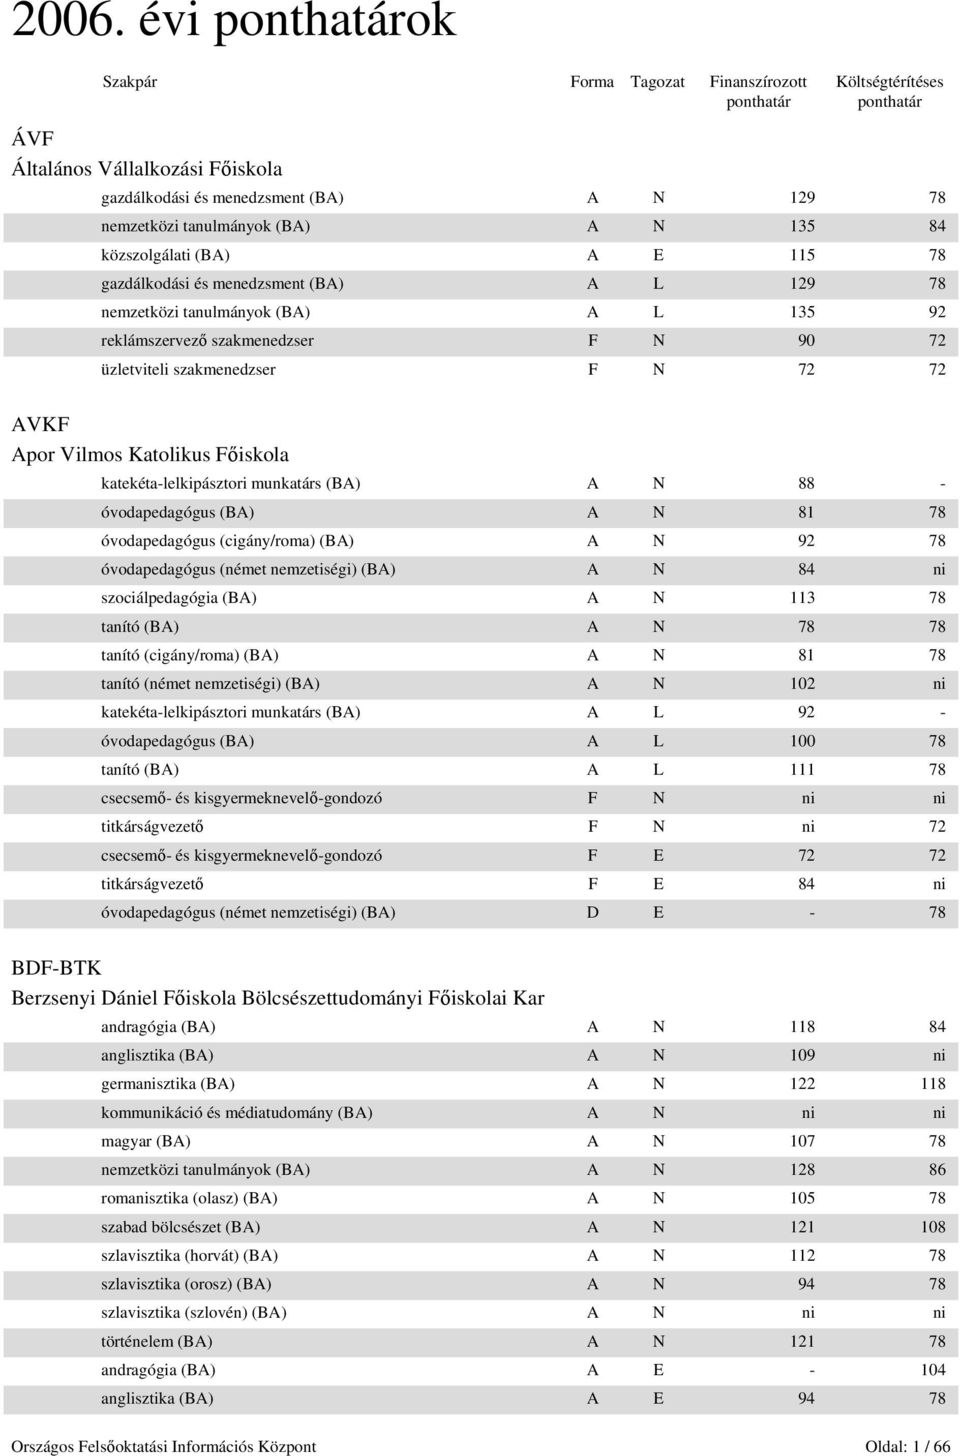 2006. évi ponthatárok - PDF Ingyenes letöltés